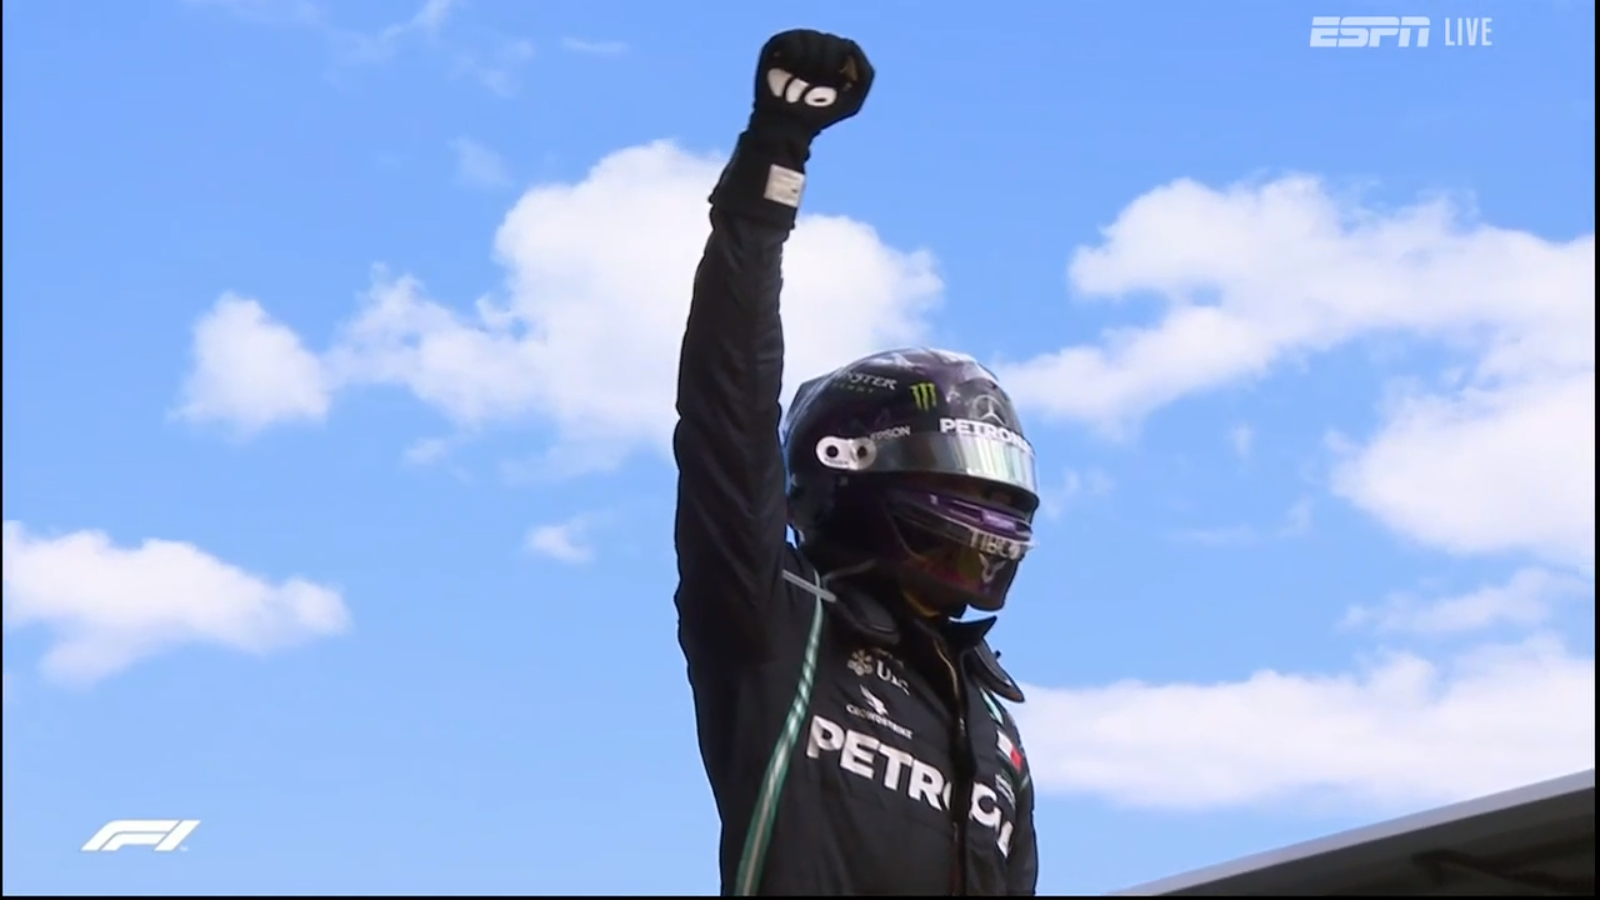 Lewis Hamilton celebrates his win for Mercedes.